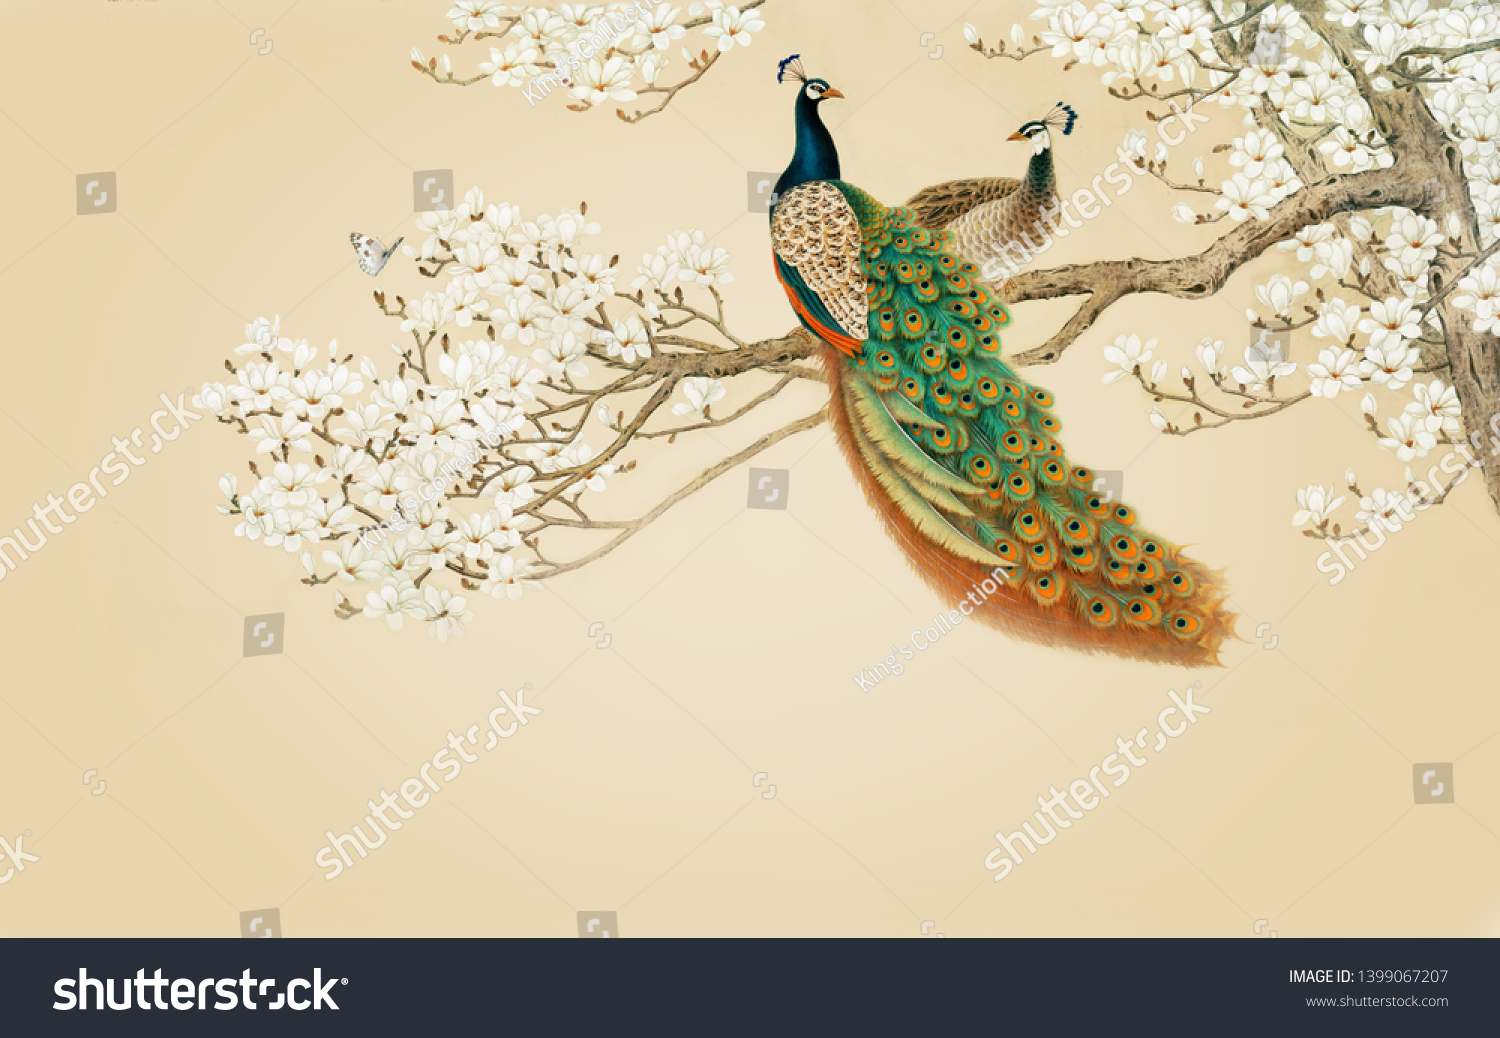 孔雀のテクスチャ背景に木 3d壁紙 のイラスト素材